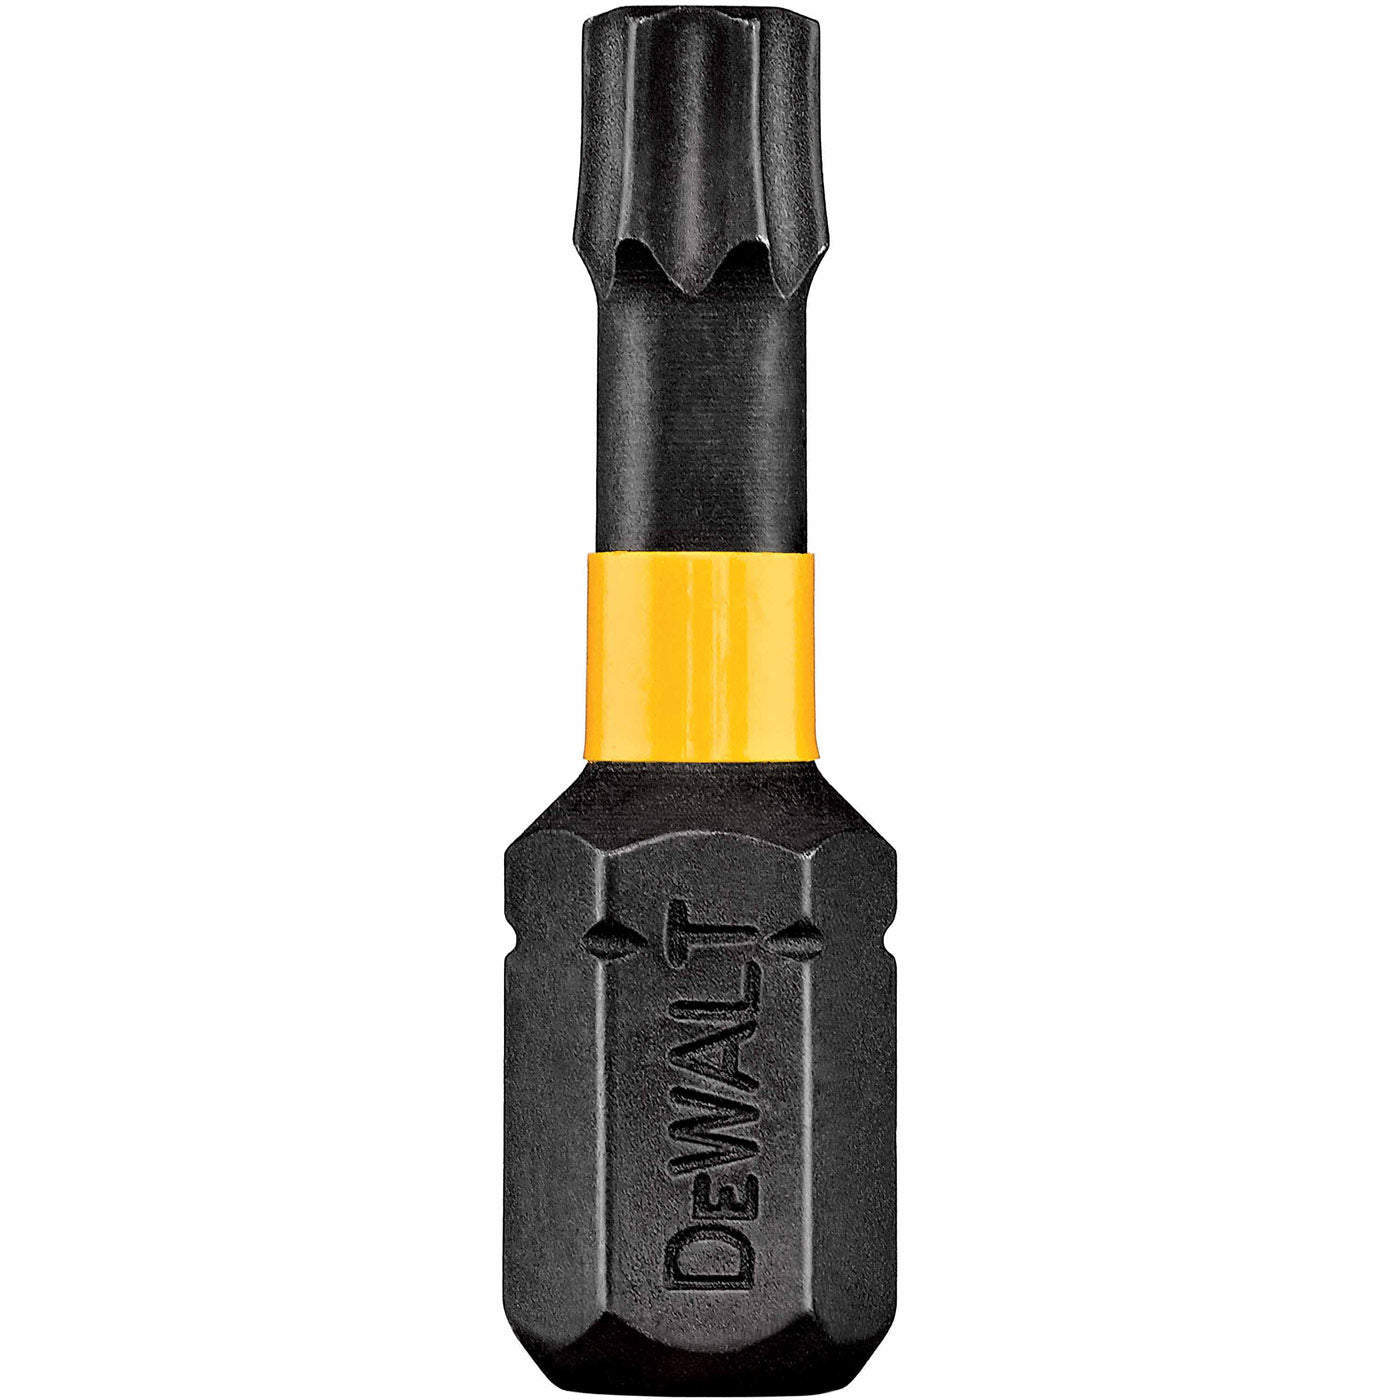 DeWalt DWA1TX15IRB 1" Torx T15 IMPACT Ready Bits Bulk Pack of 50